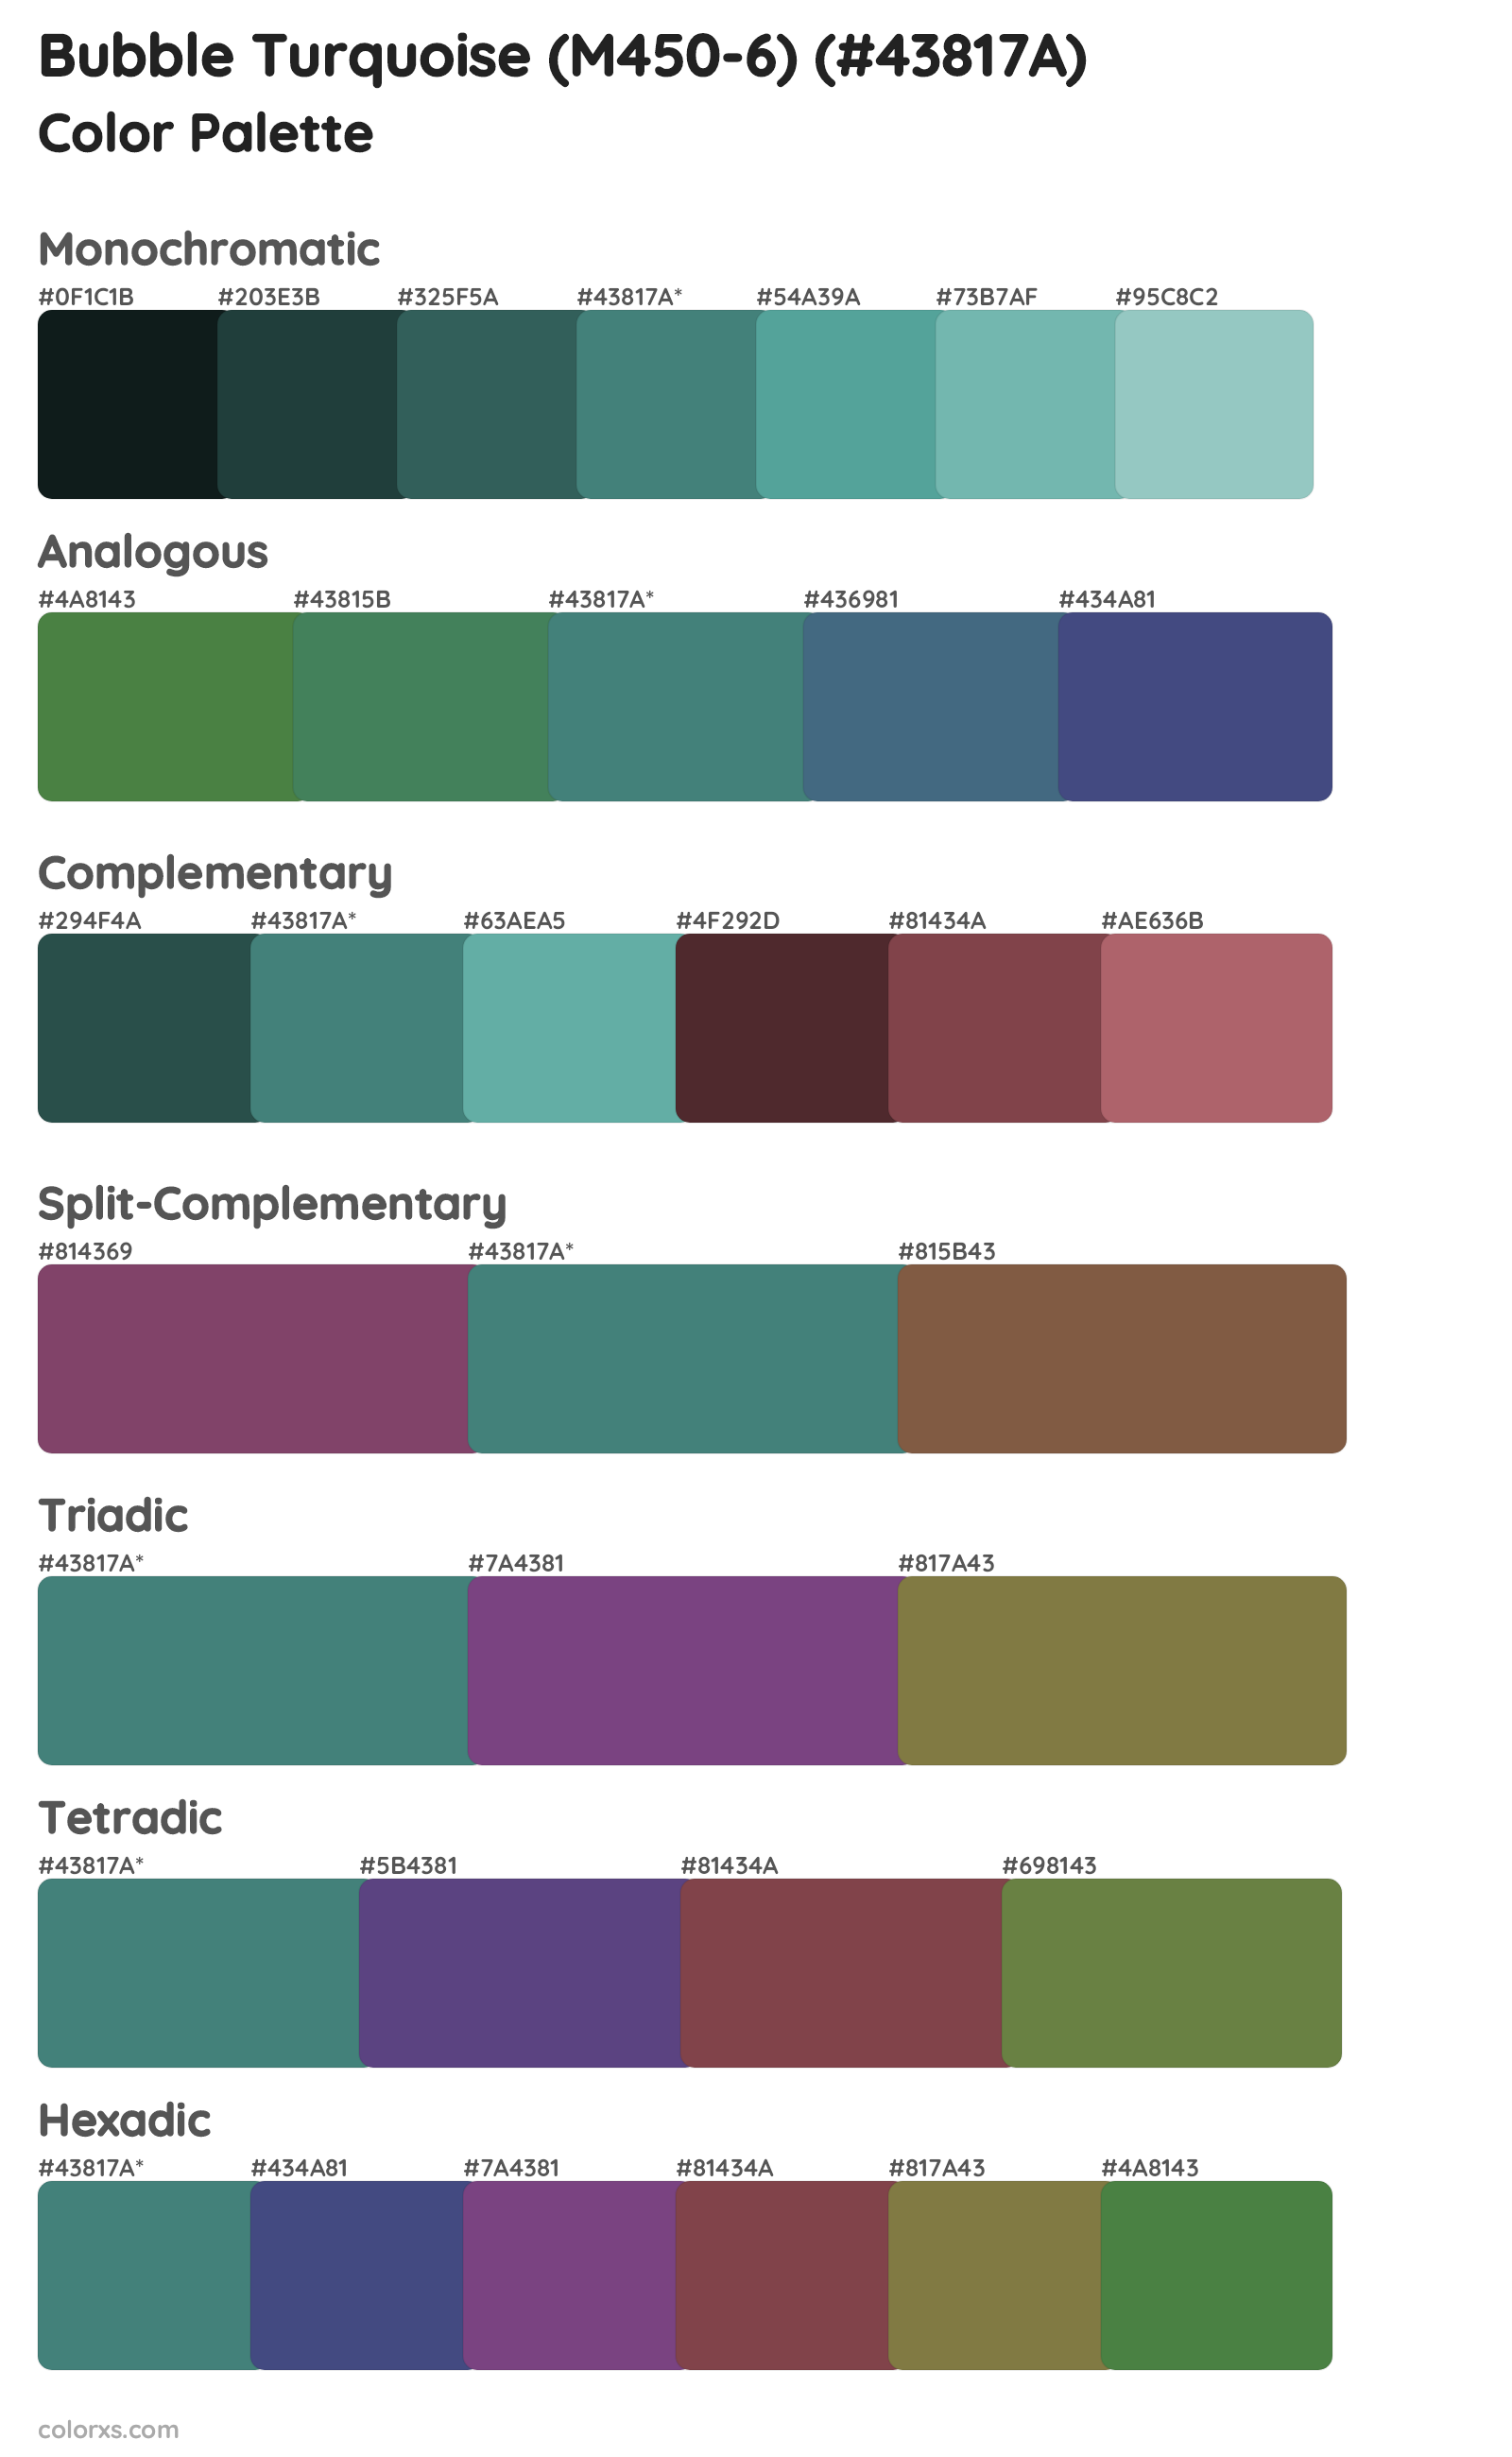 Bubble Turquoise (M450-6) Color Scheme Palettes